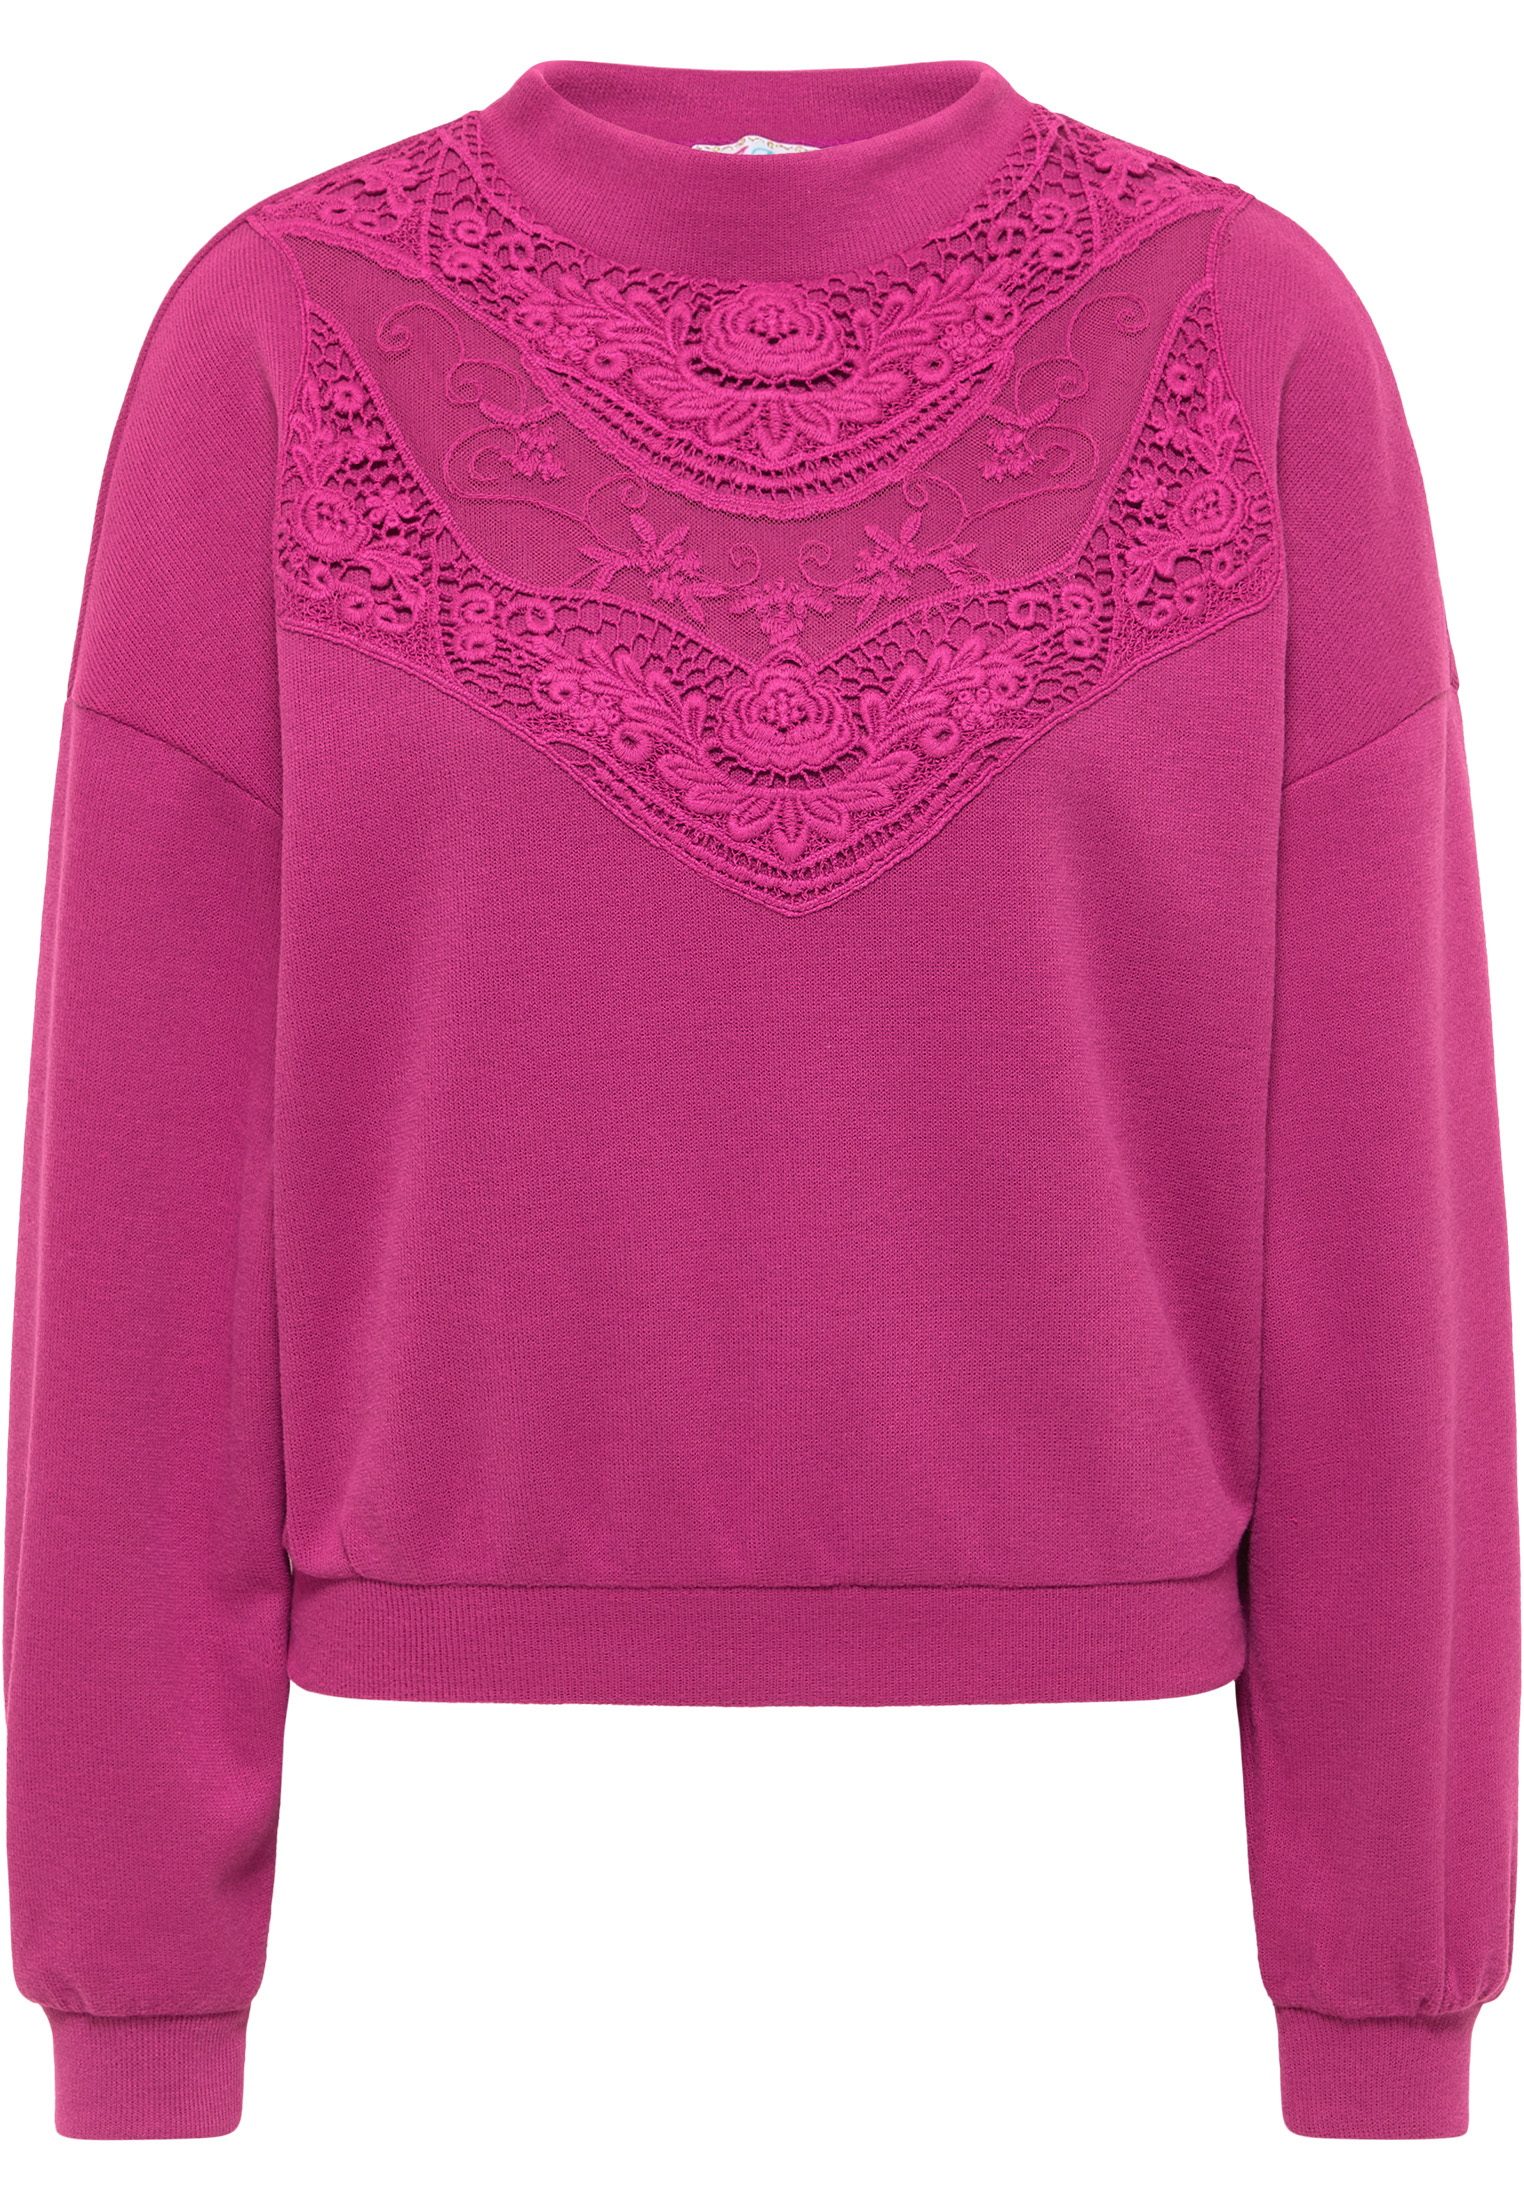 IZIA Sweter w kolorze Różowy, Ciemnoróżowym 